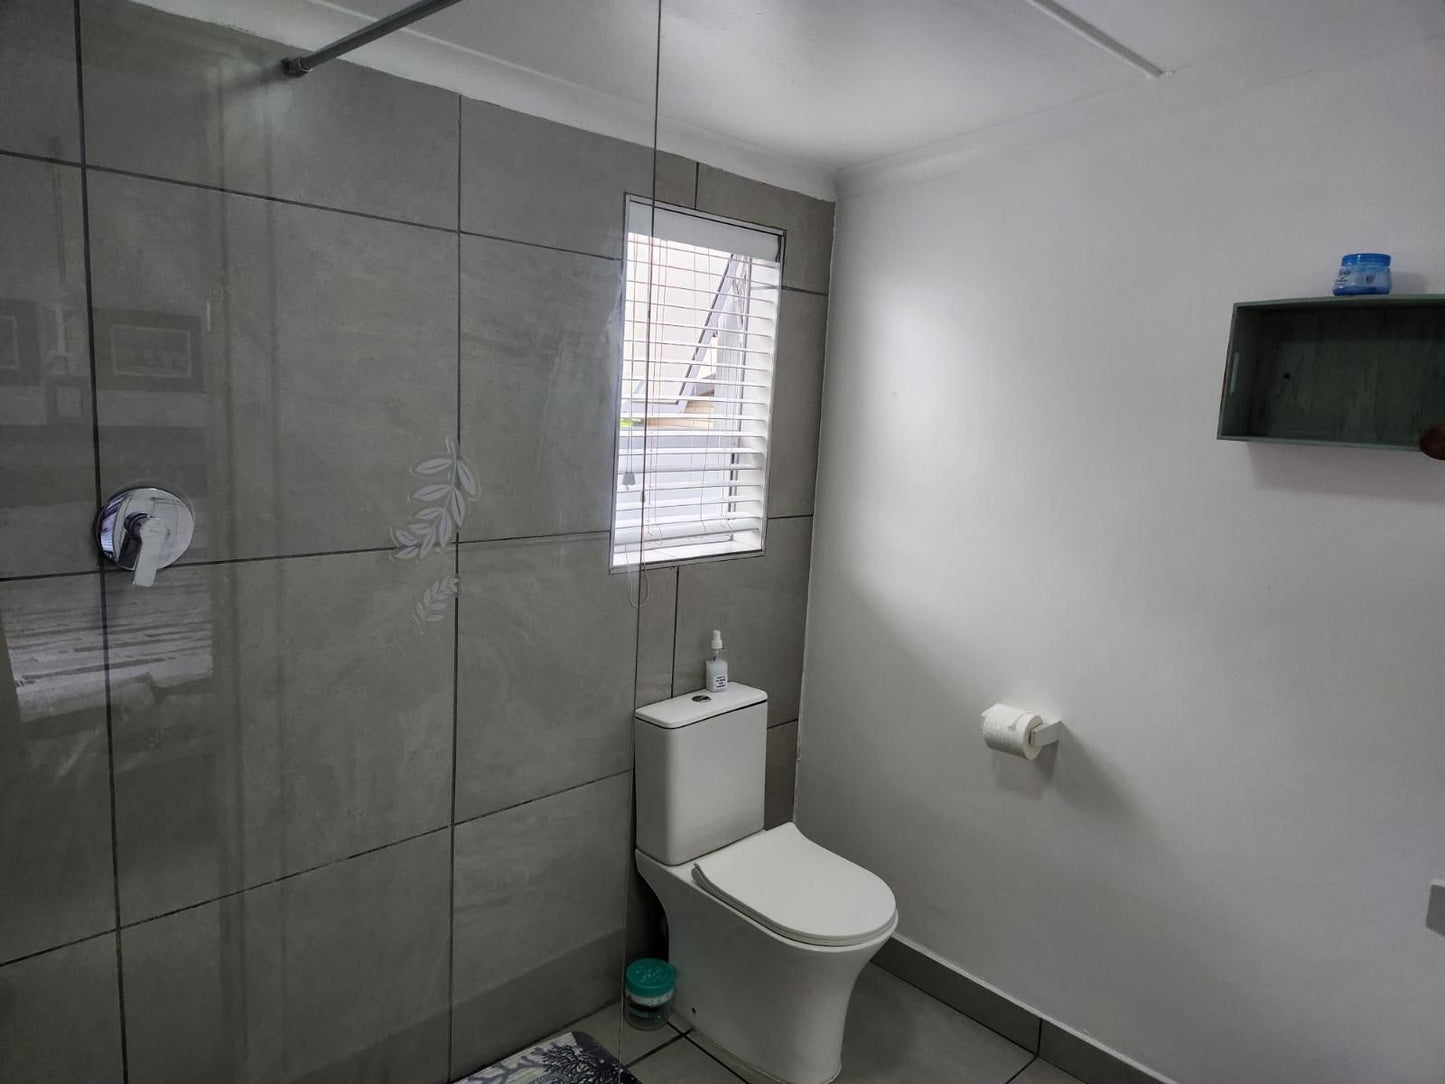 Suidersee Block 1 Hartenbos Hartenbos Western Cape South Africa Colorless, Bathroom